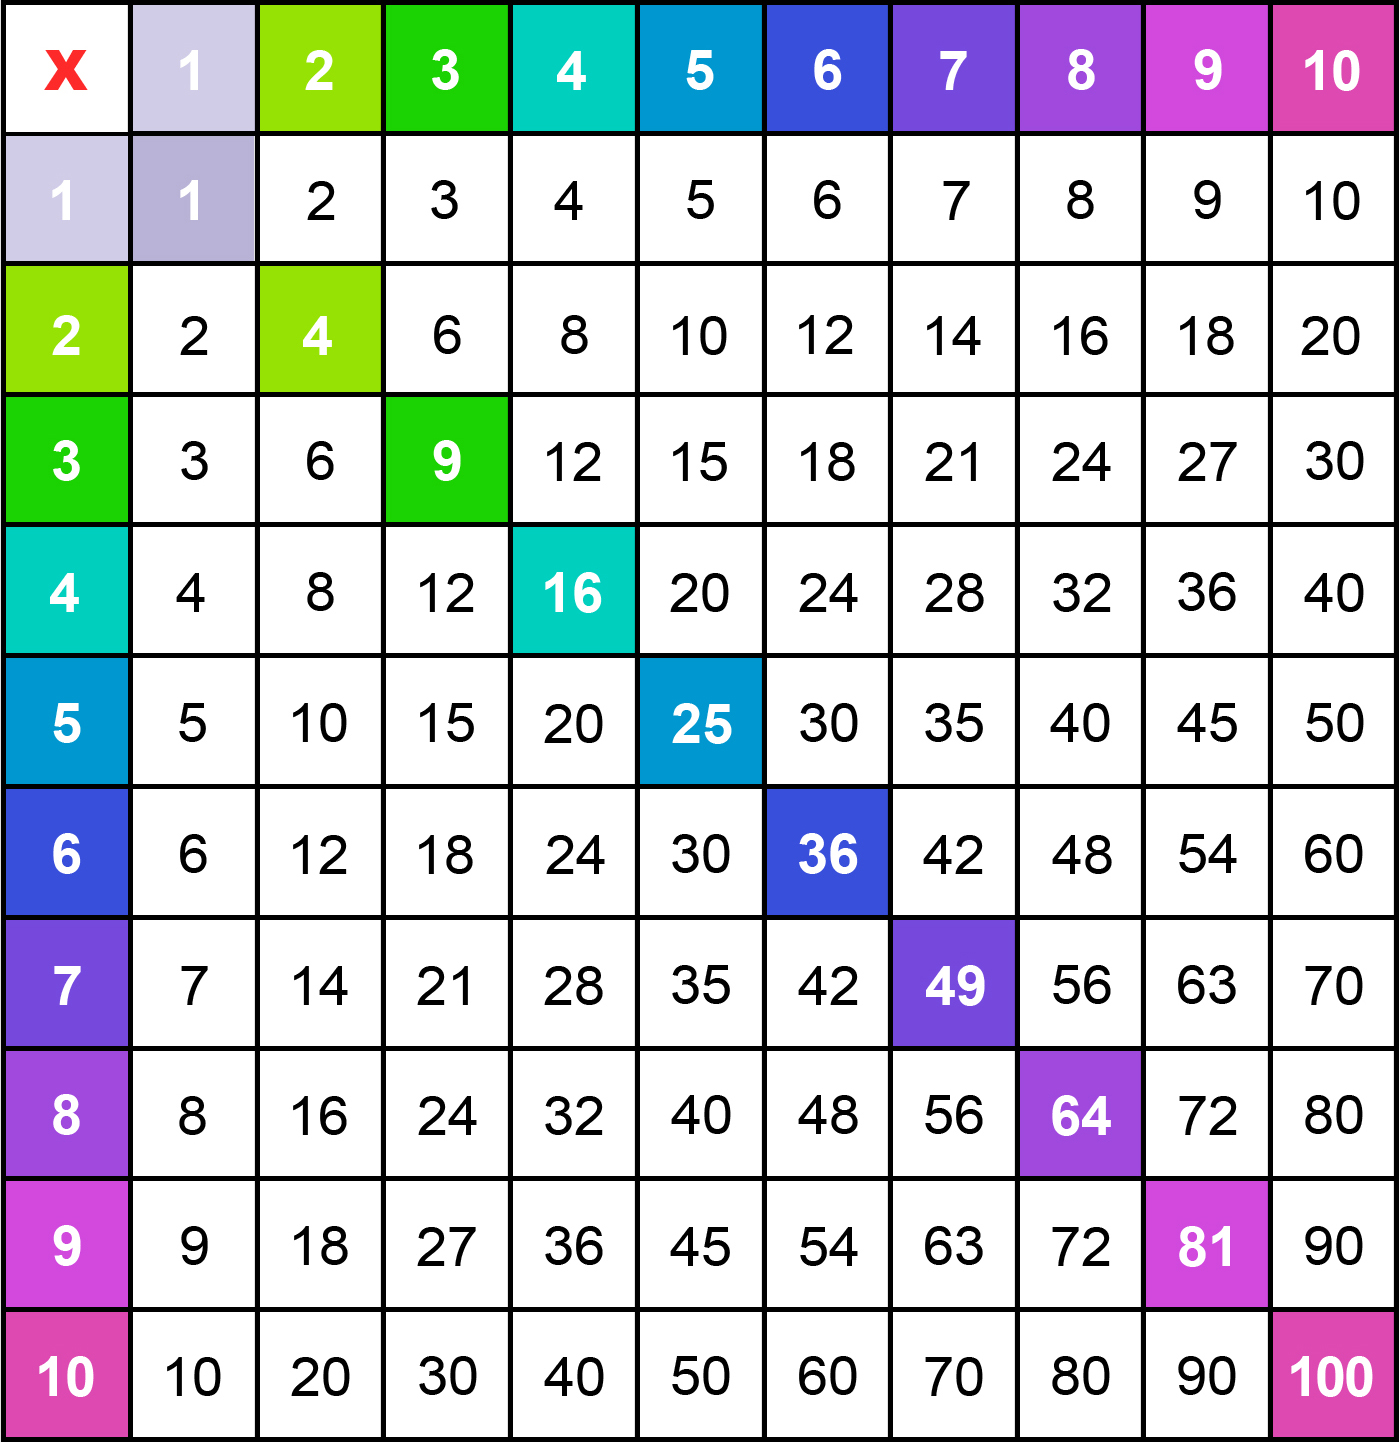 Tableaux de multiplication à Imprimer - PDF Gratuits